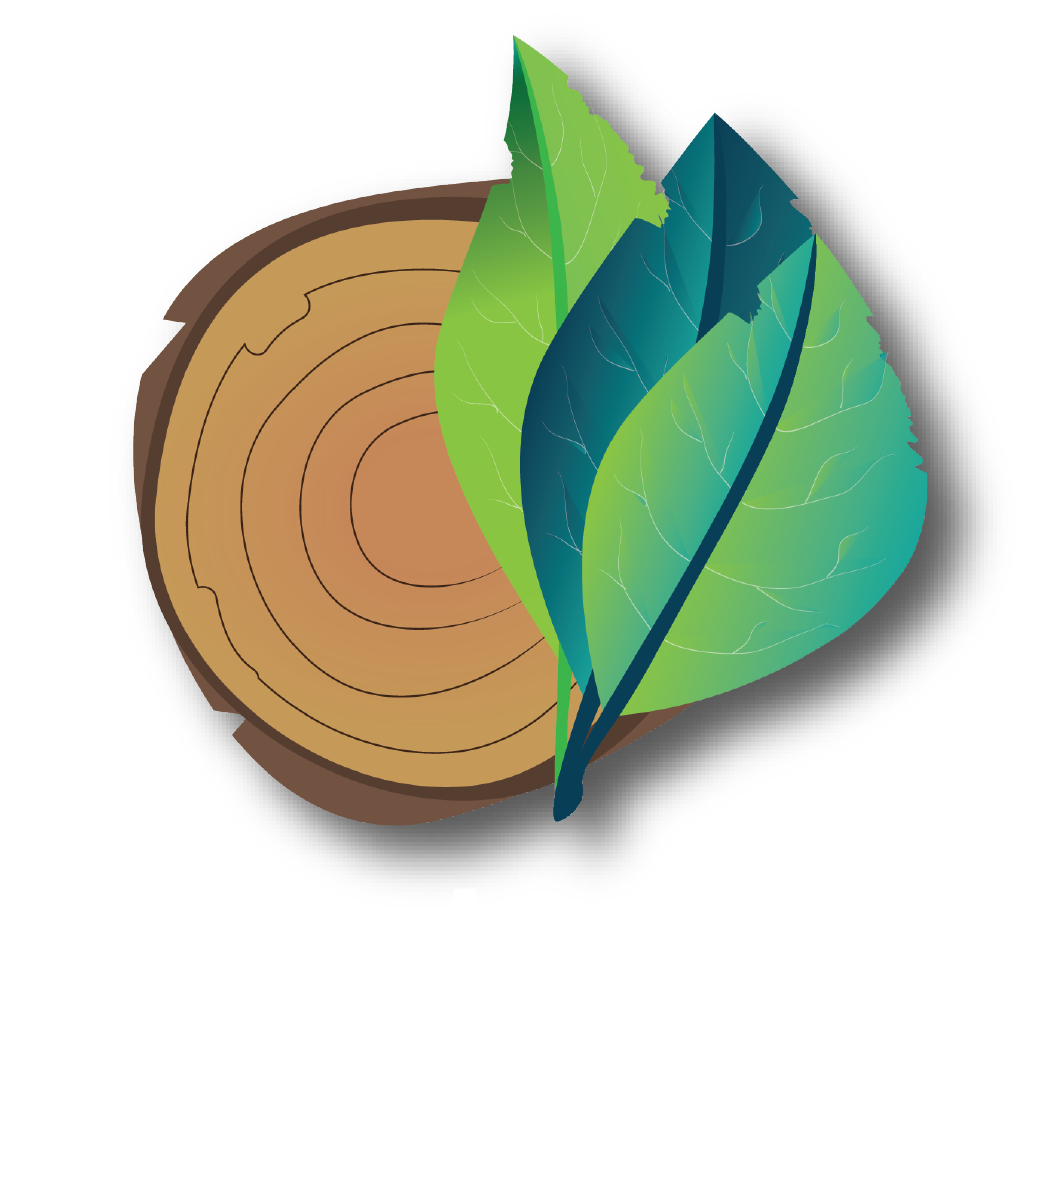 intertwined iowa